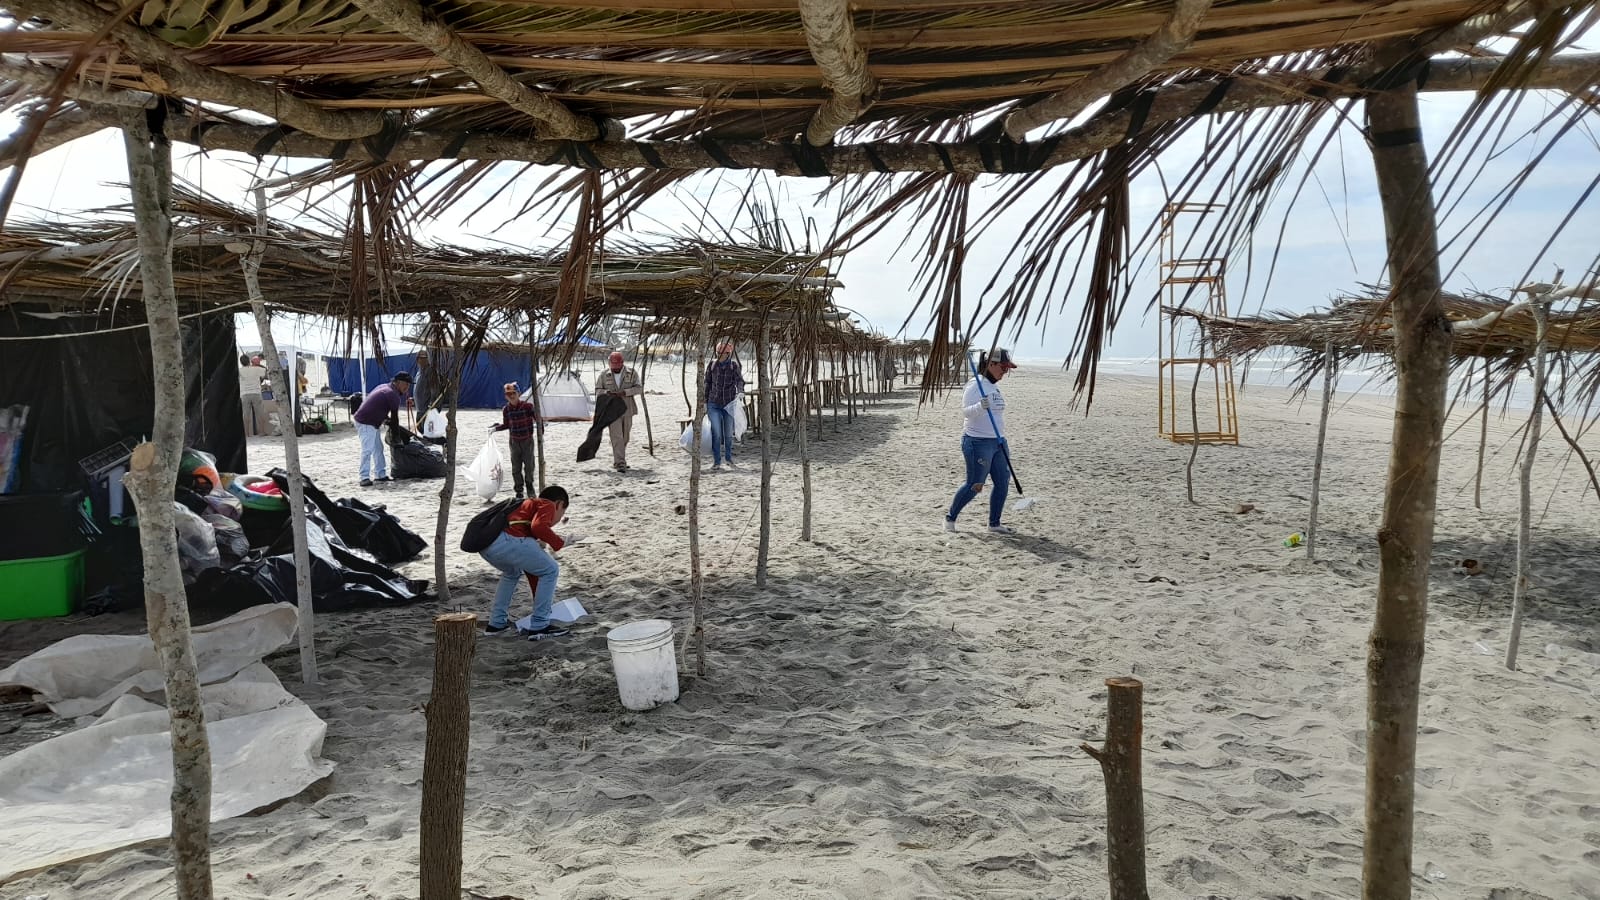 Jornadas de limpieza en playas de Rosario recolectan 50 toneladas de basura durante semana santa